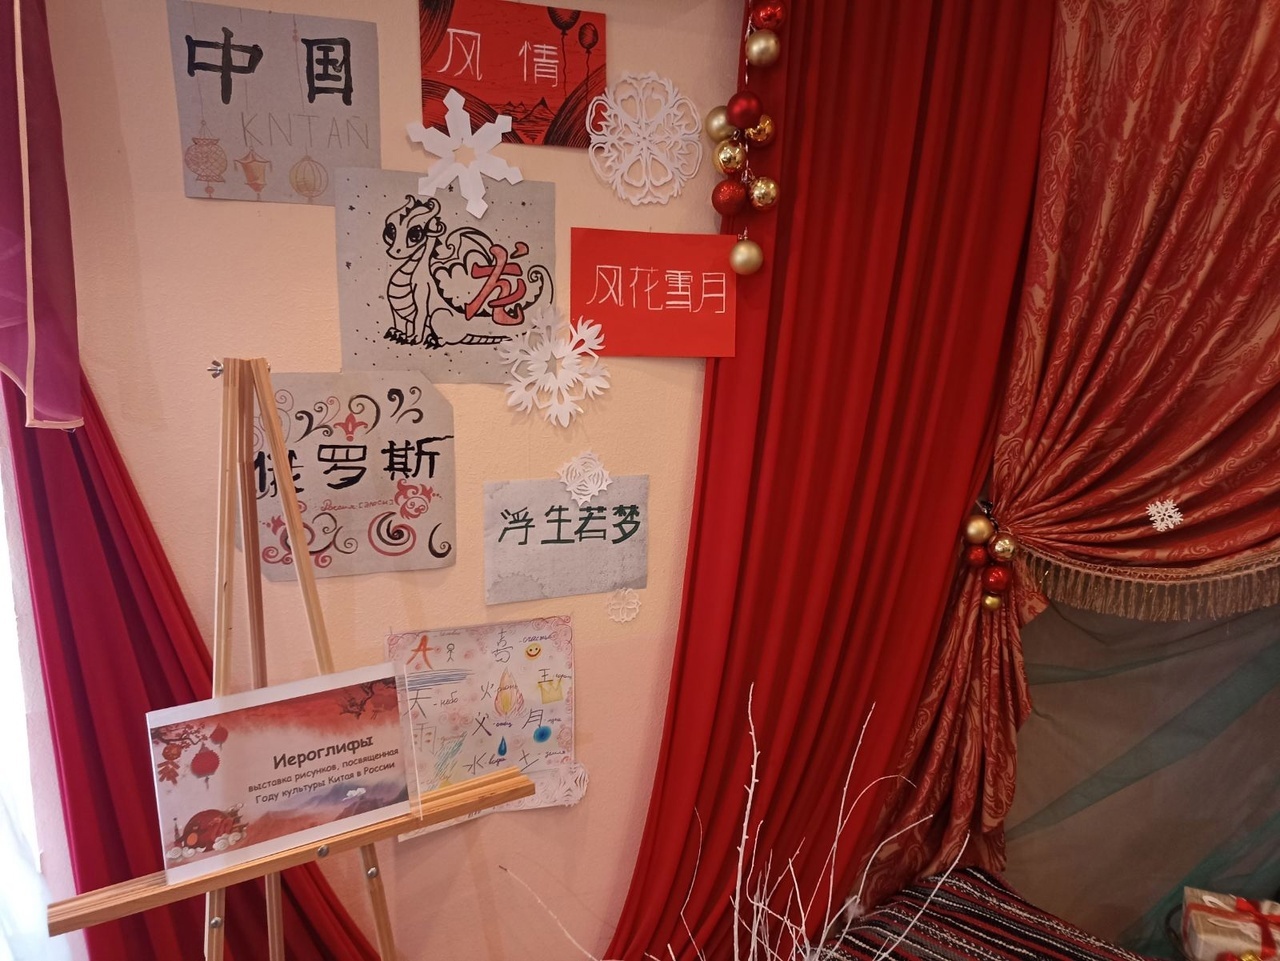 В учреждениях культуры стартовали тематические мероприятия, посвящённые Году культуры Китая в России.